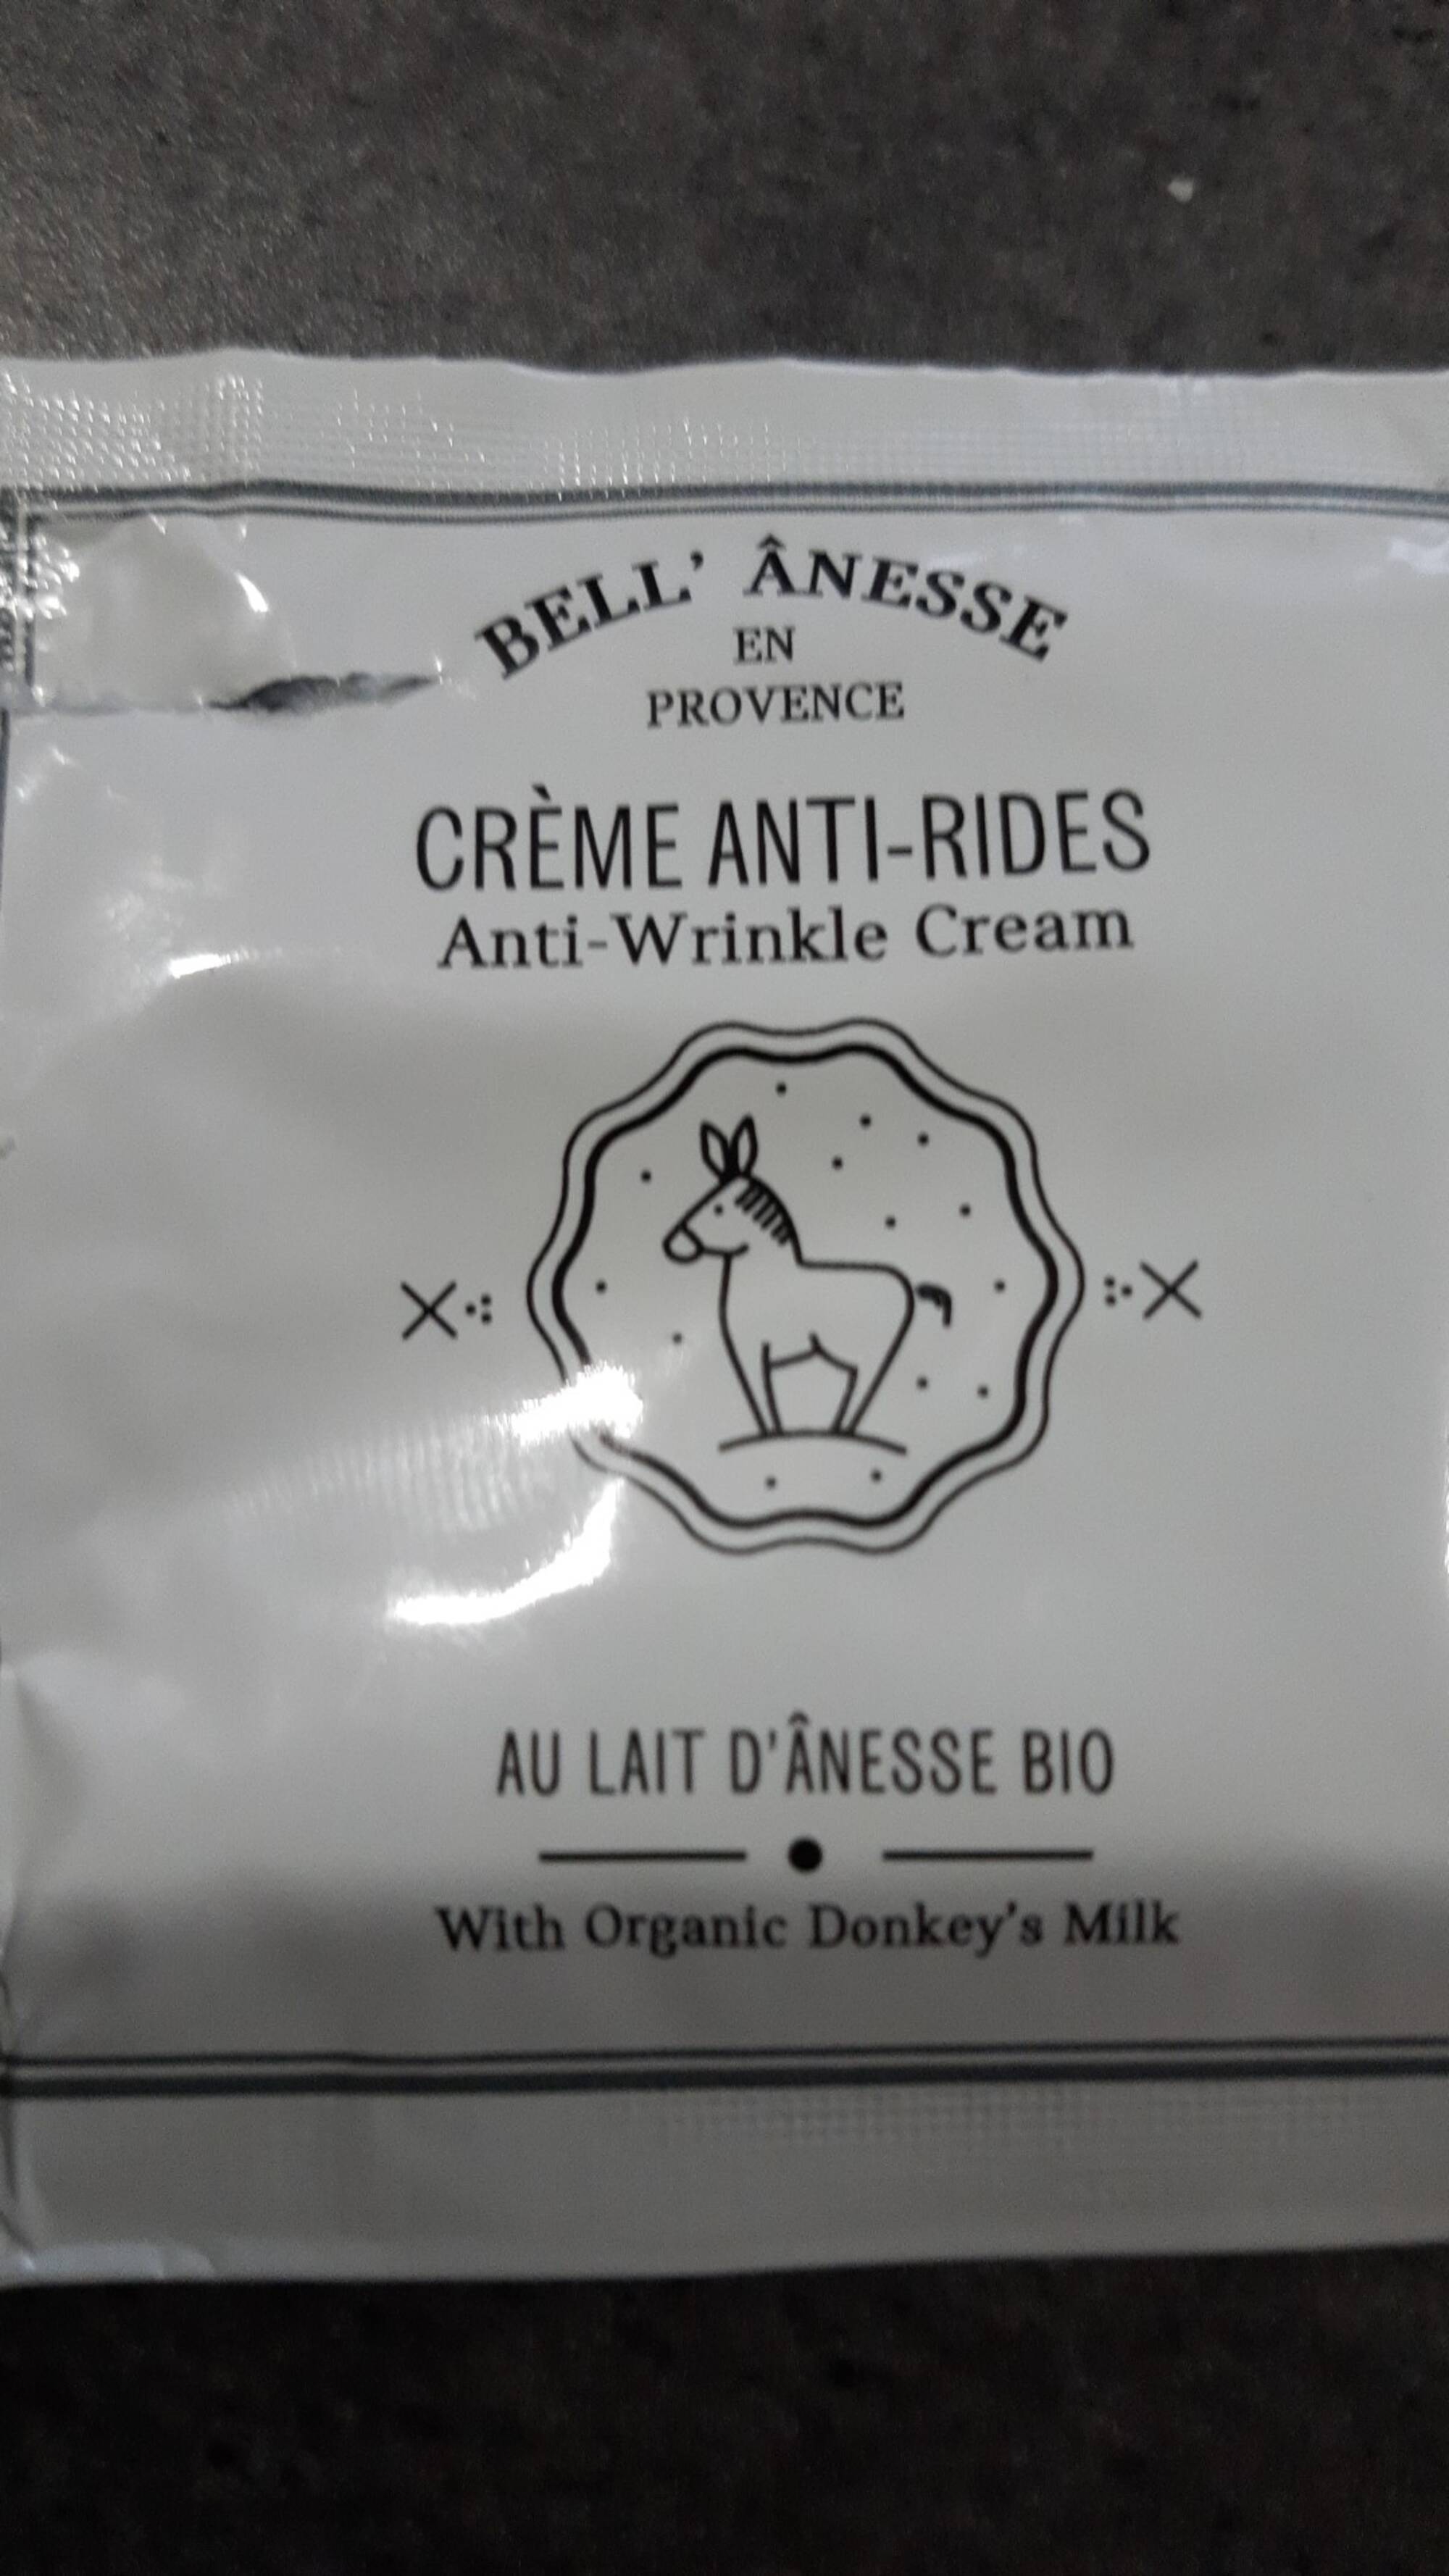 BELL'ÂNESSE EN PROVENCE - Crème anti-rides au lait d'ânesse